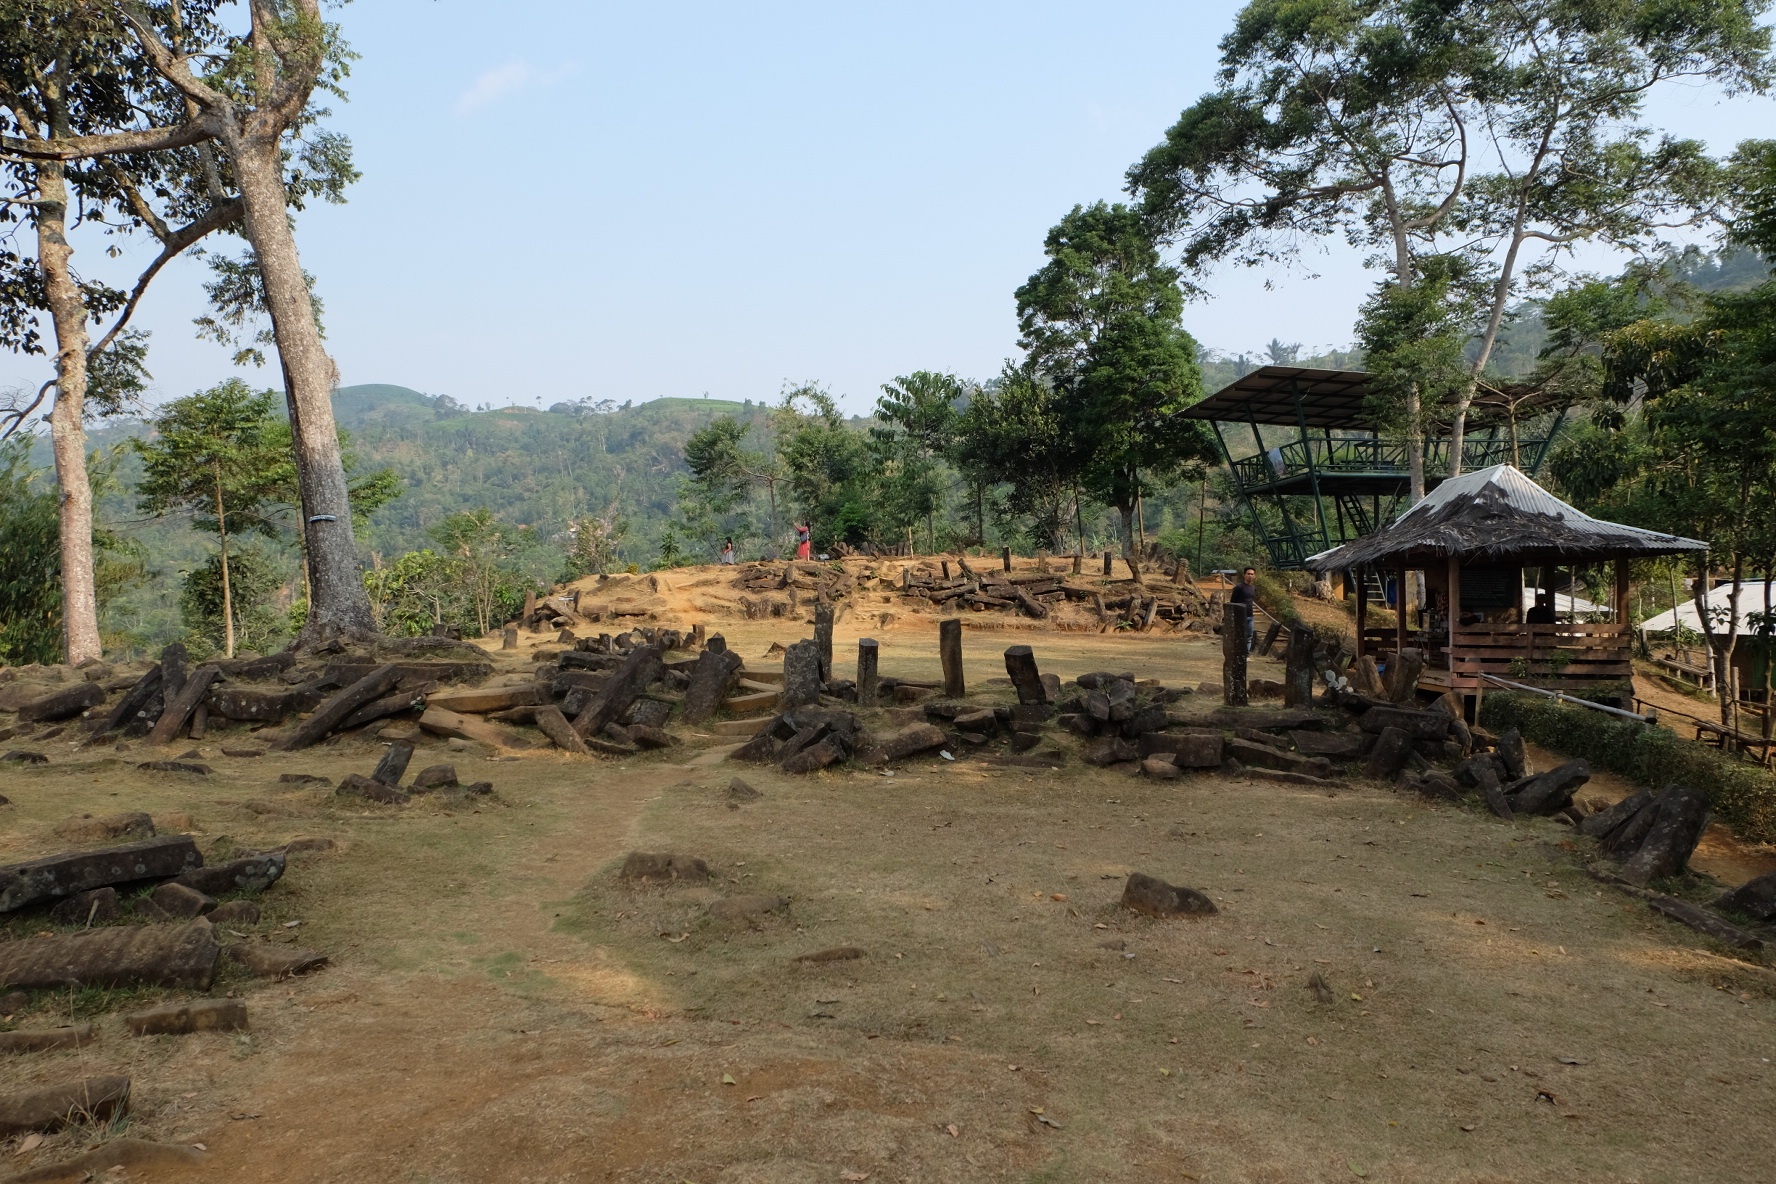 The Site of Gunung Padang